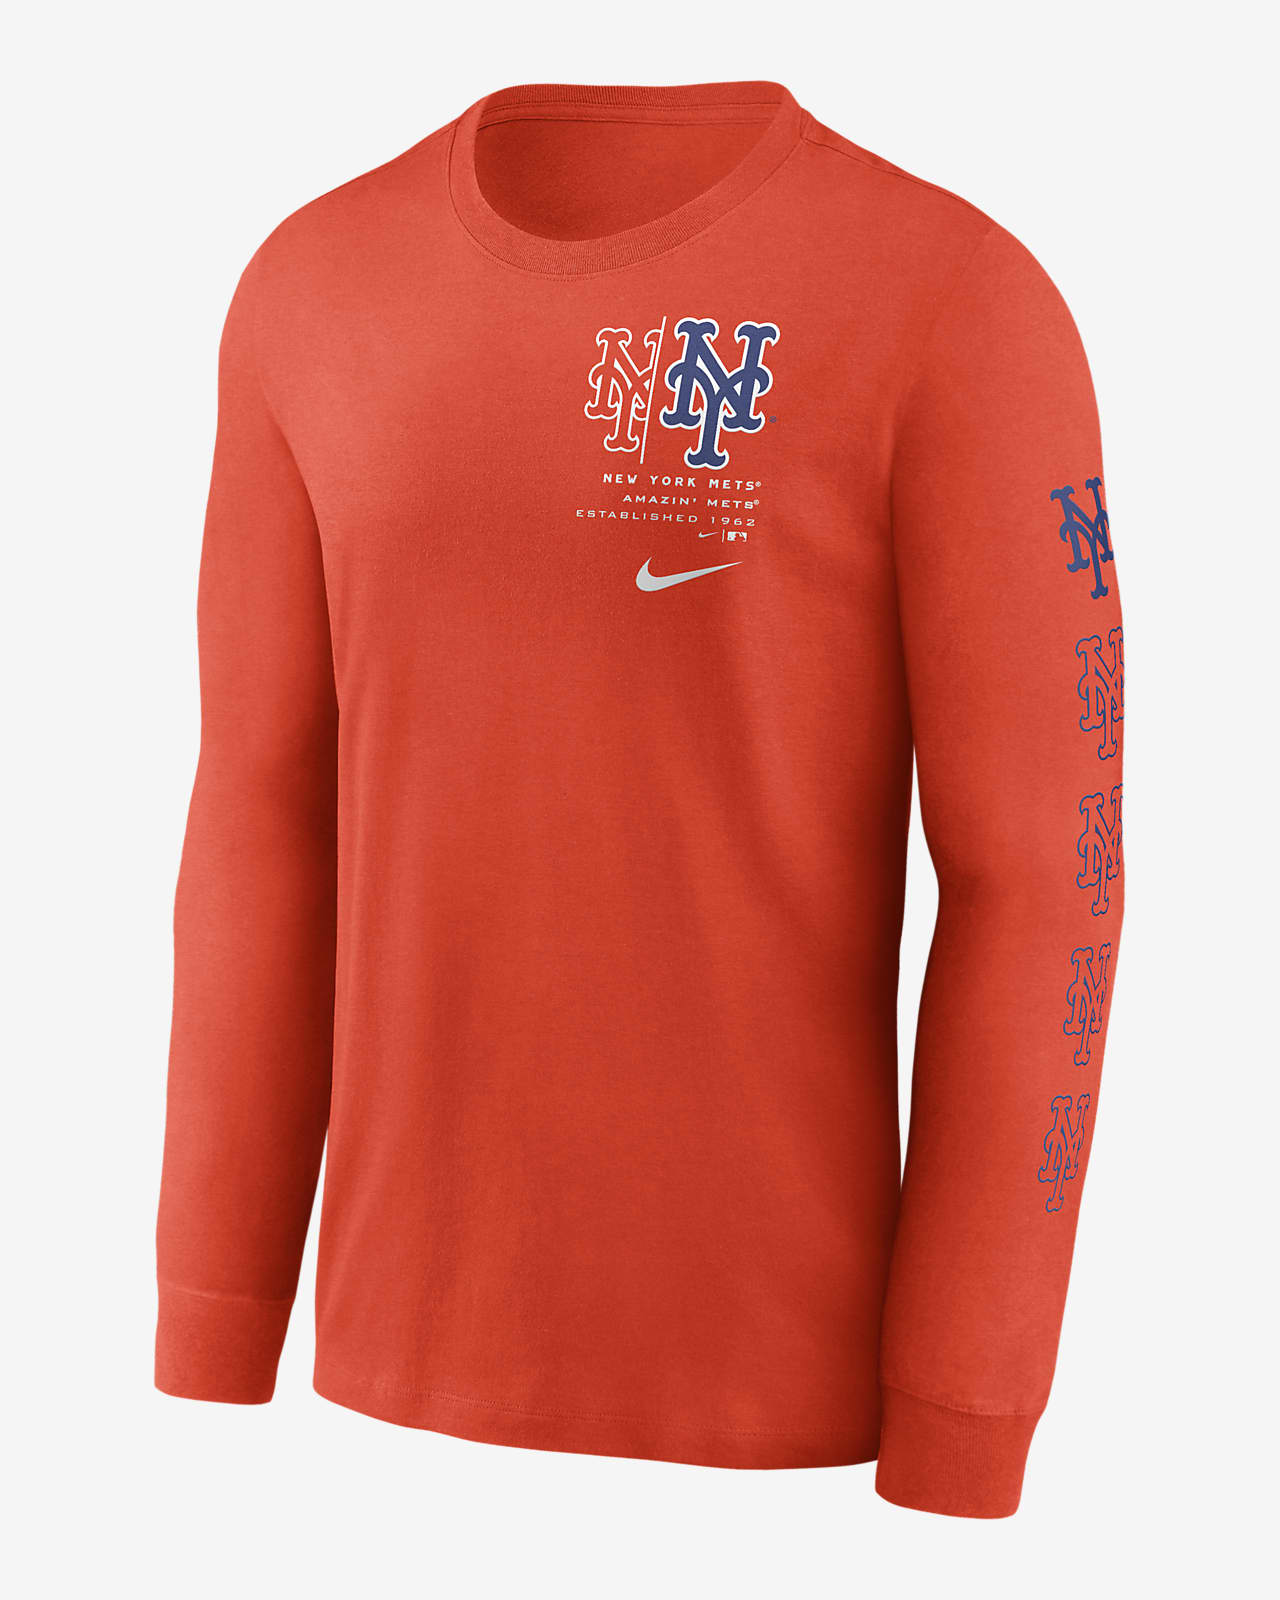 Nike New York Mets just hate us shirt, hoodie, longsleeve